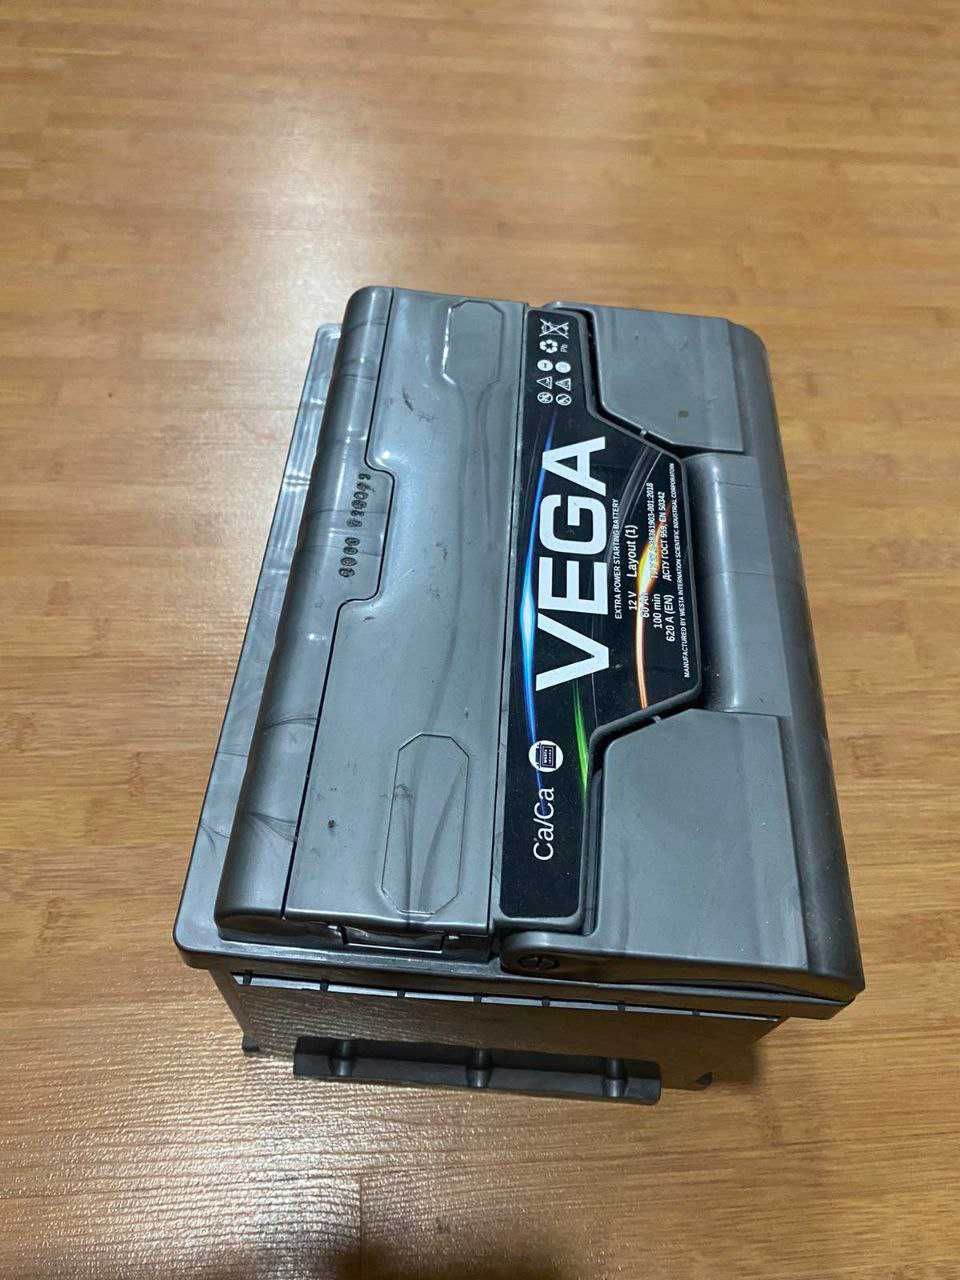 Автомобільний акумулятор Vega Premium 60 А·год 620 A